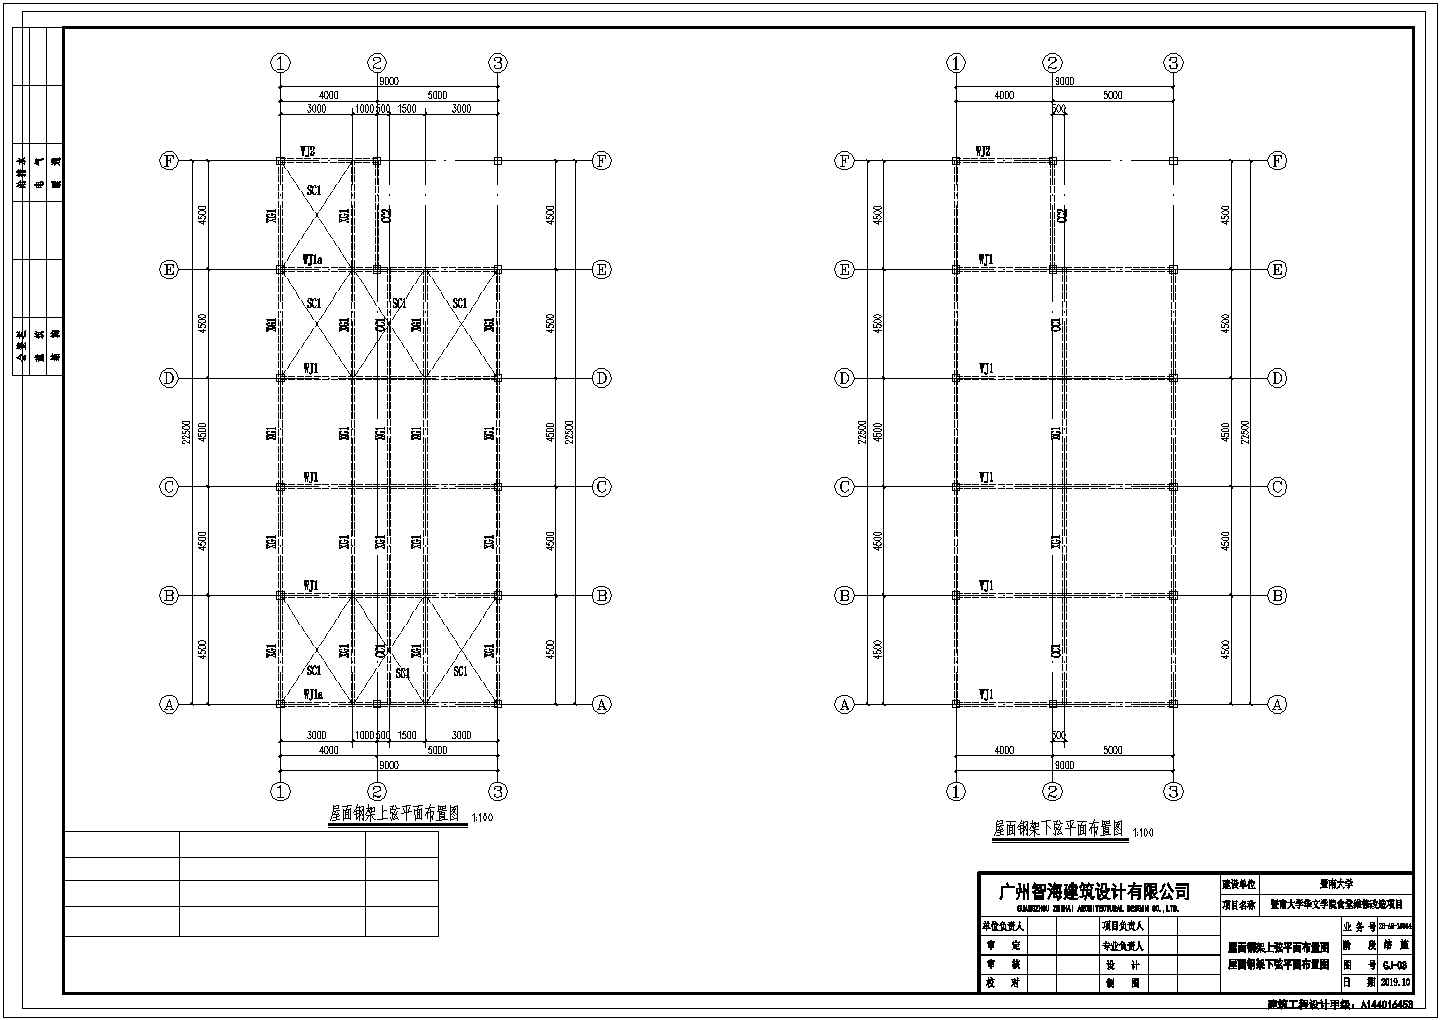 盐城市某技工职业学院单层钢结构学生食堂全套结构设计CAD图纸